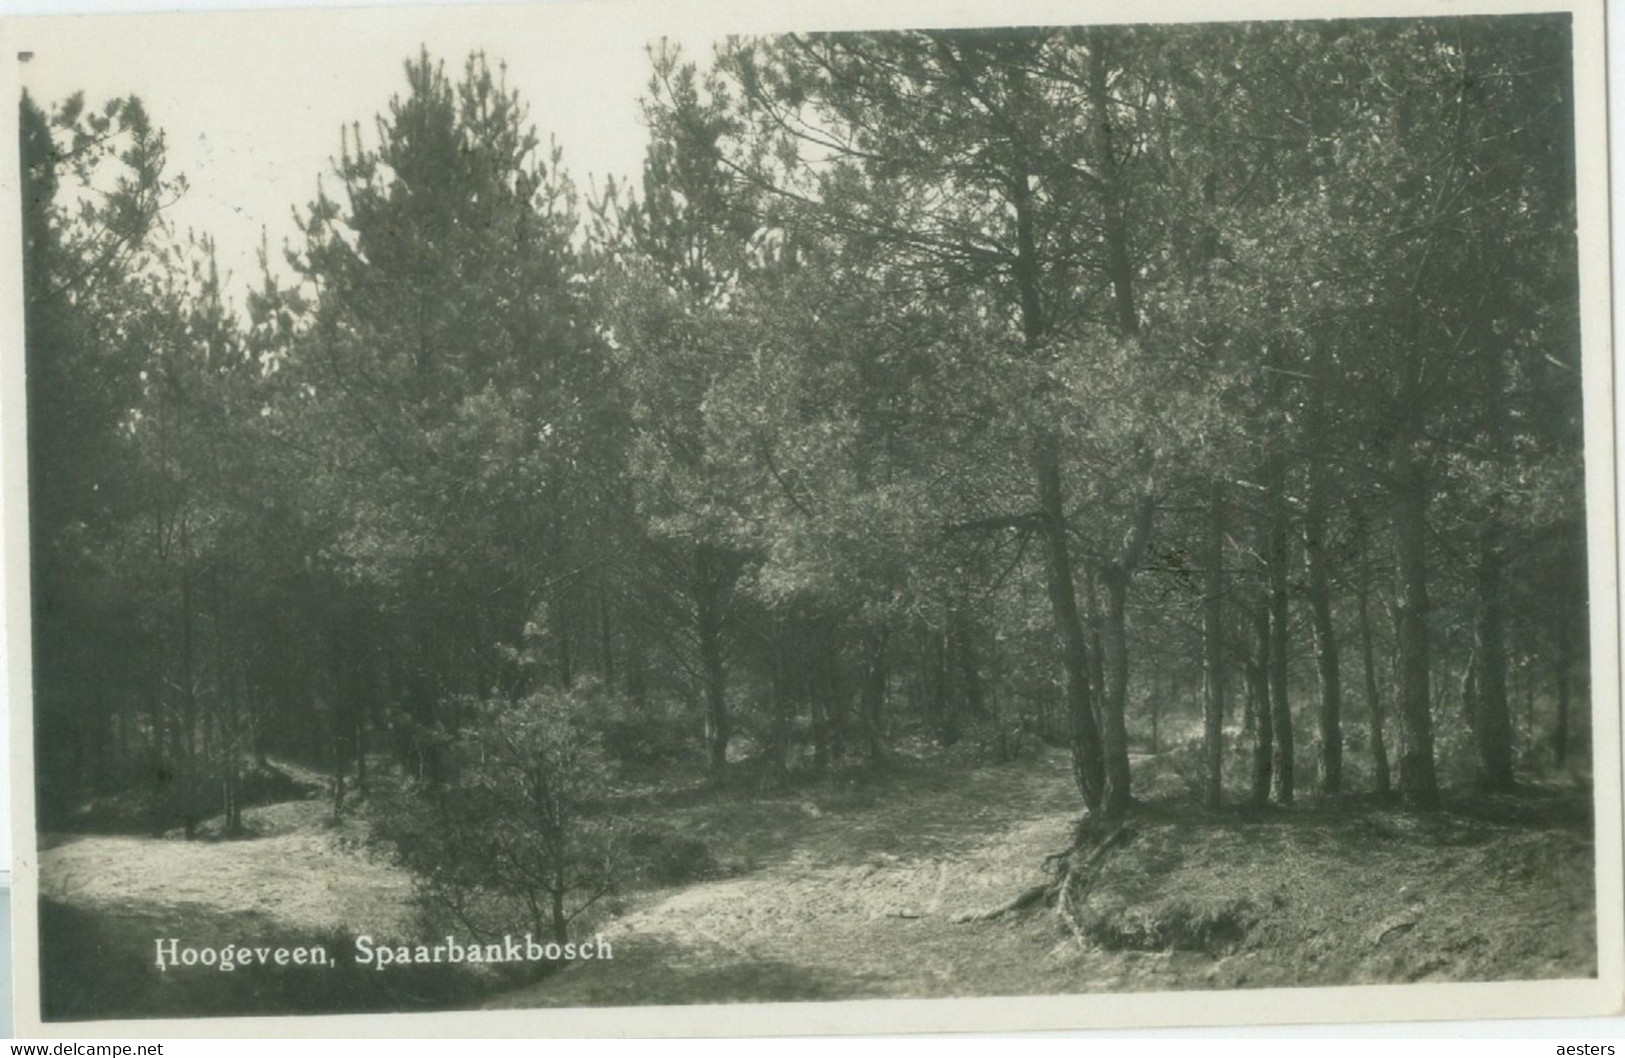 Hoogeveen 1932; Spaarbankbosch - Gelopen. (C. Pet - Hoogeveen) - Hoogeveen